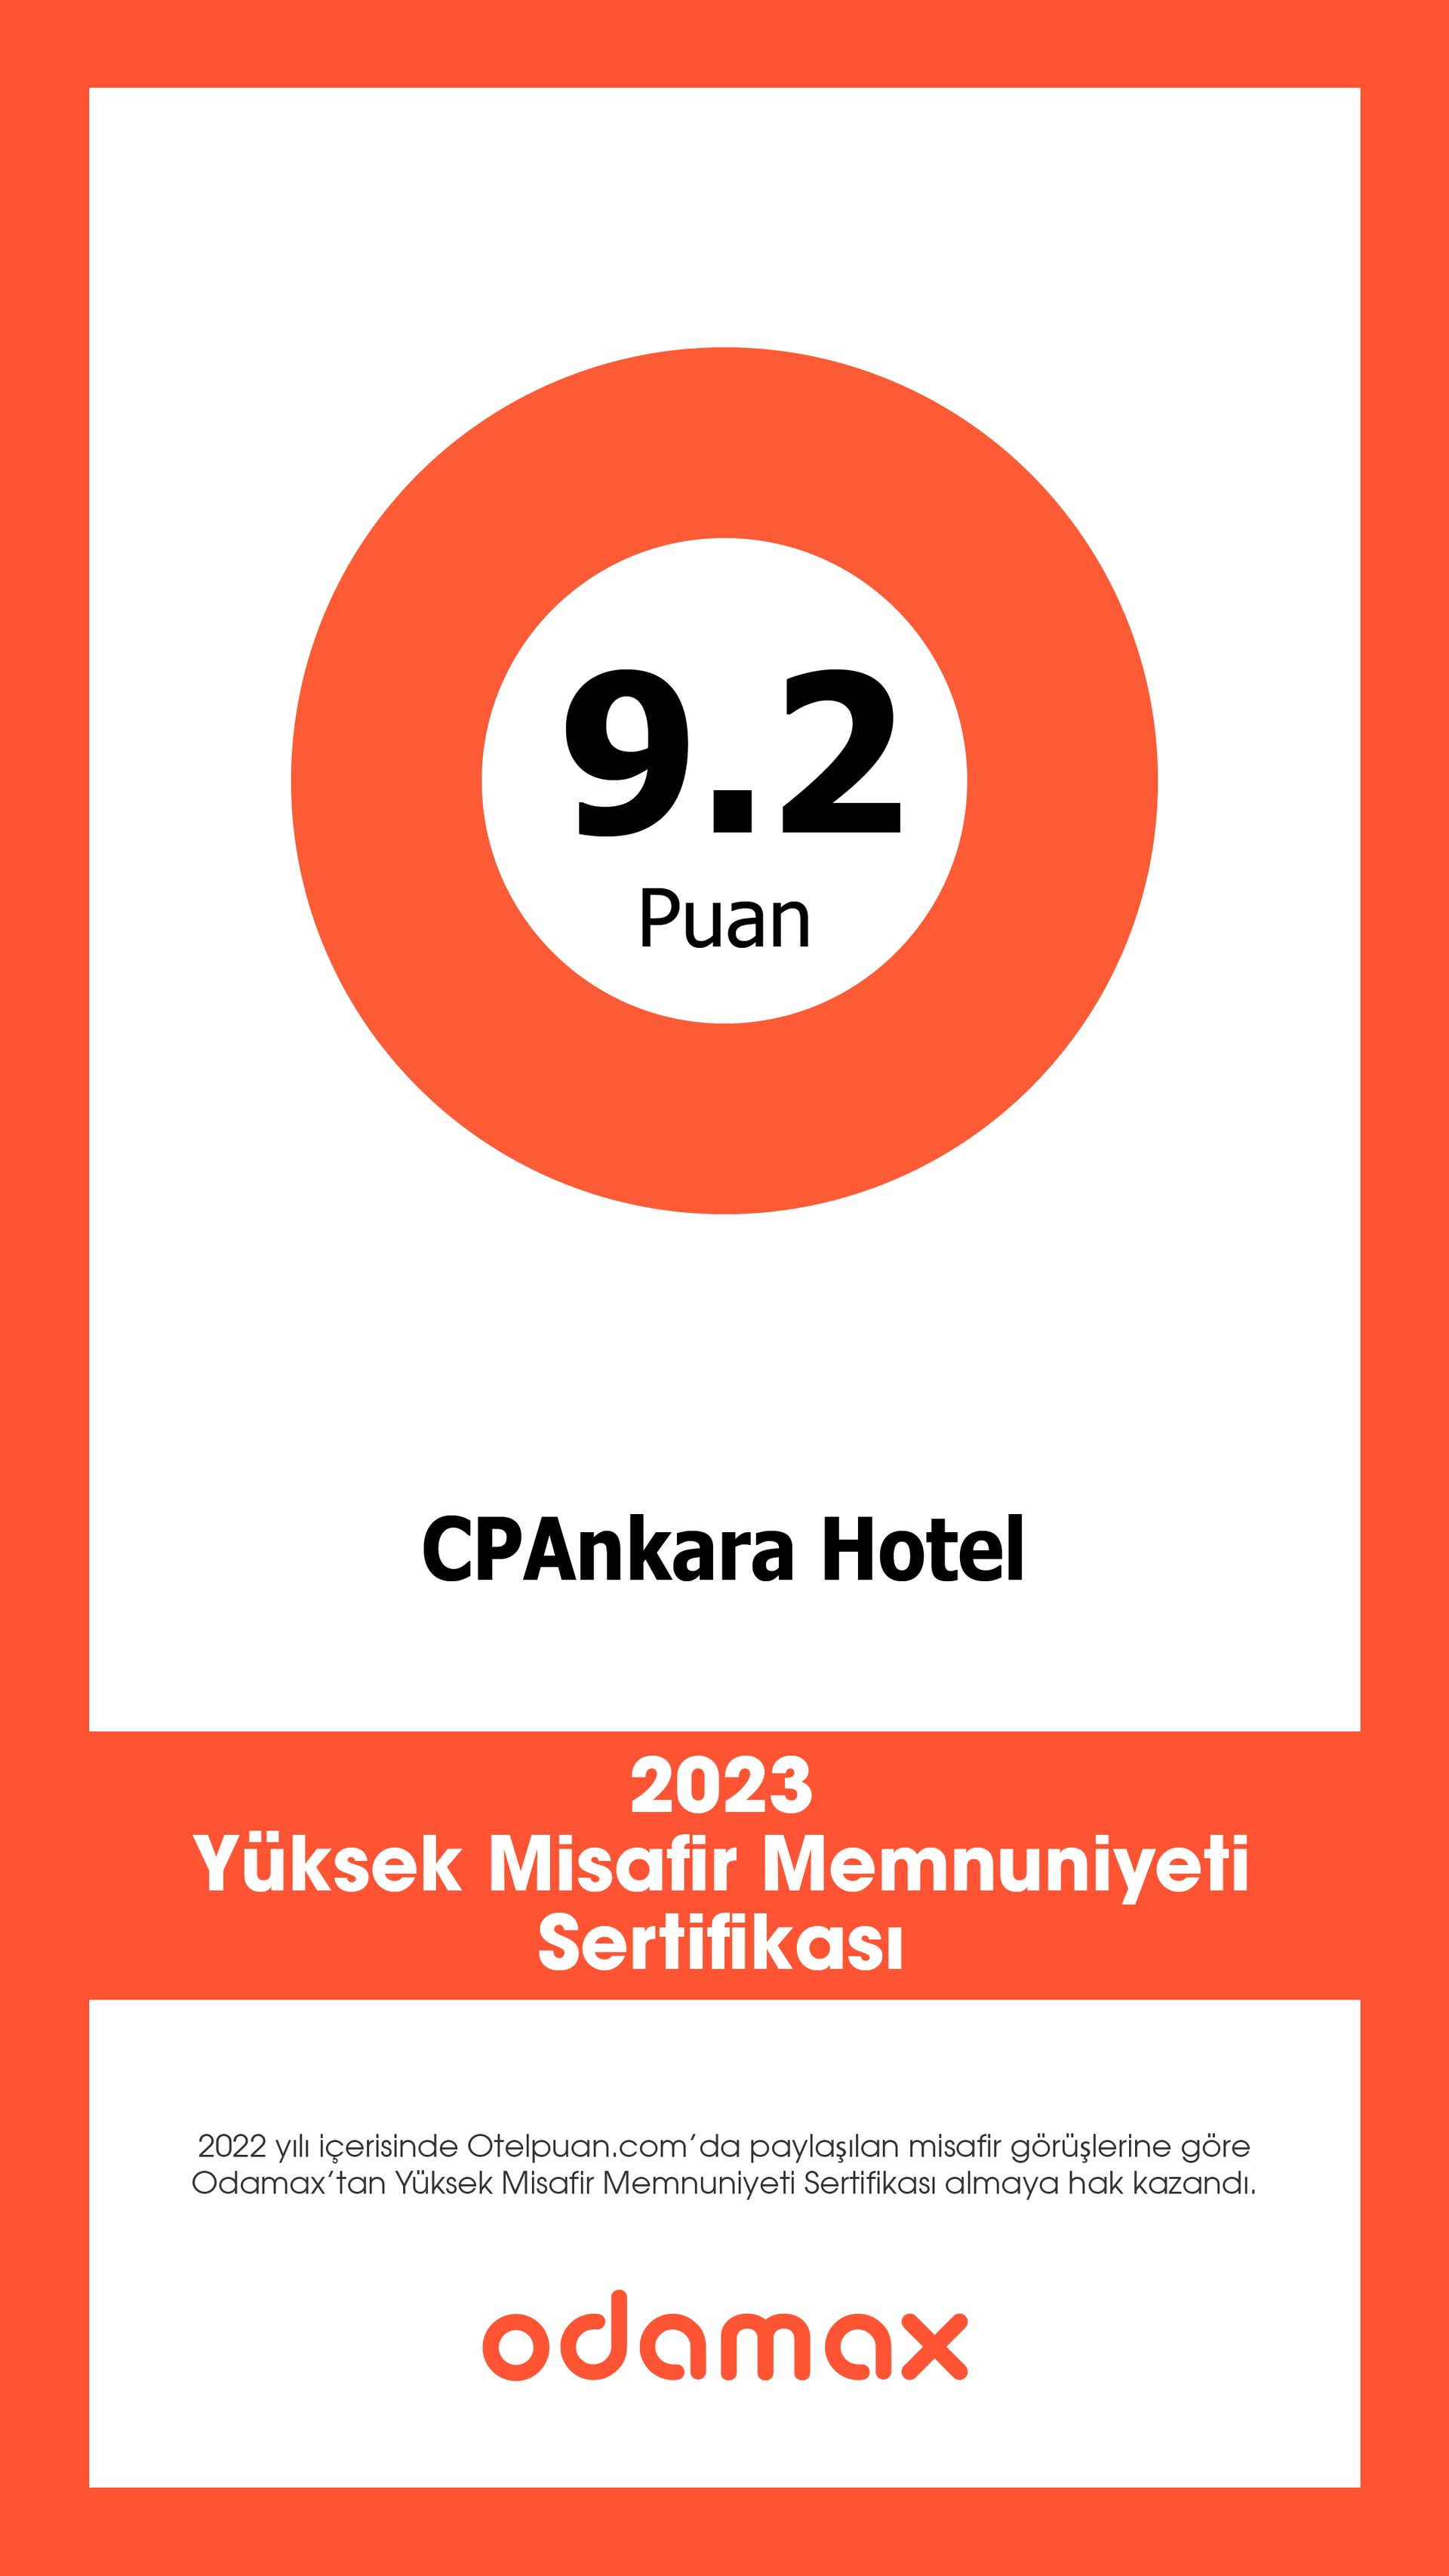 CPAnkara Hotel, odamax 2023 Yüksek Misafir Memnuniyeti Sertifikası